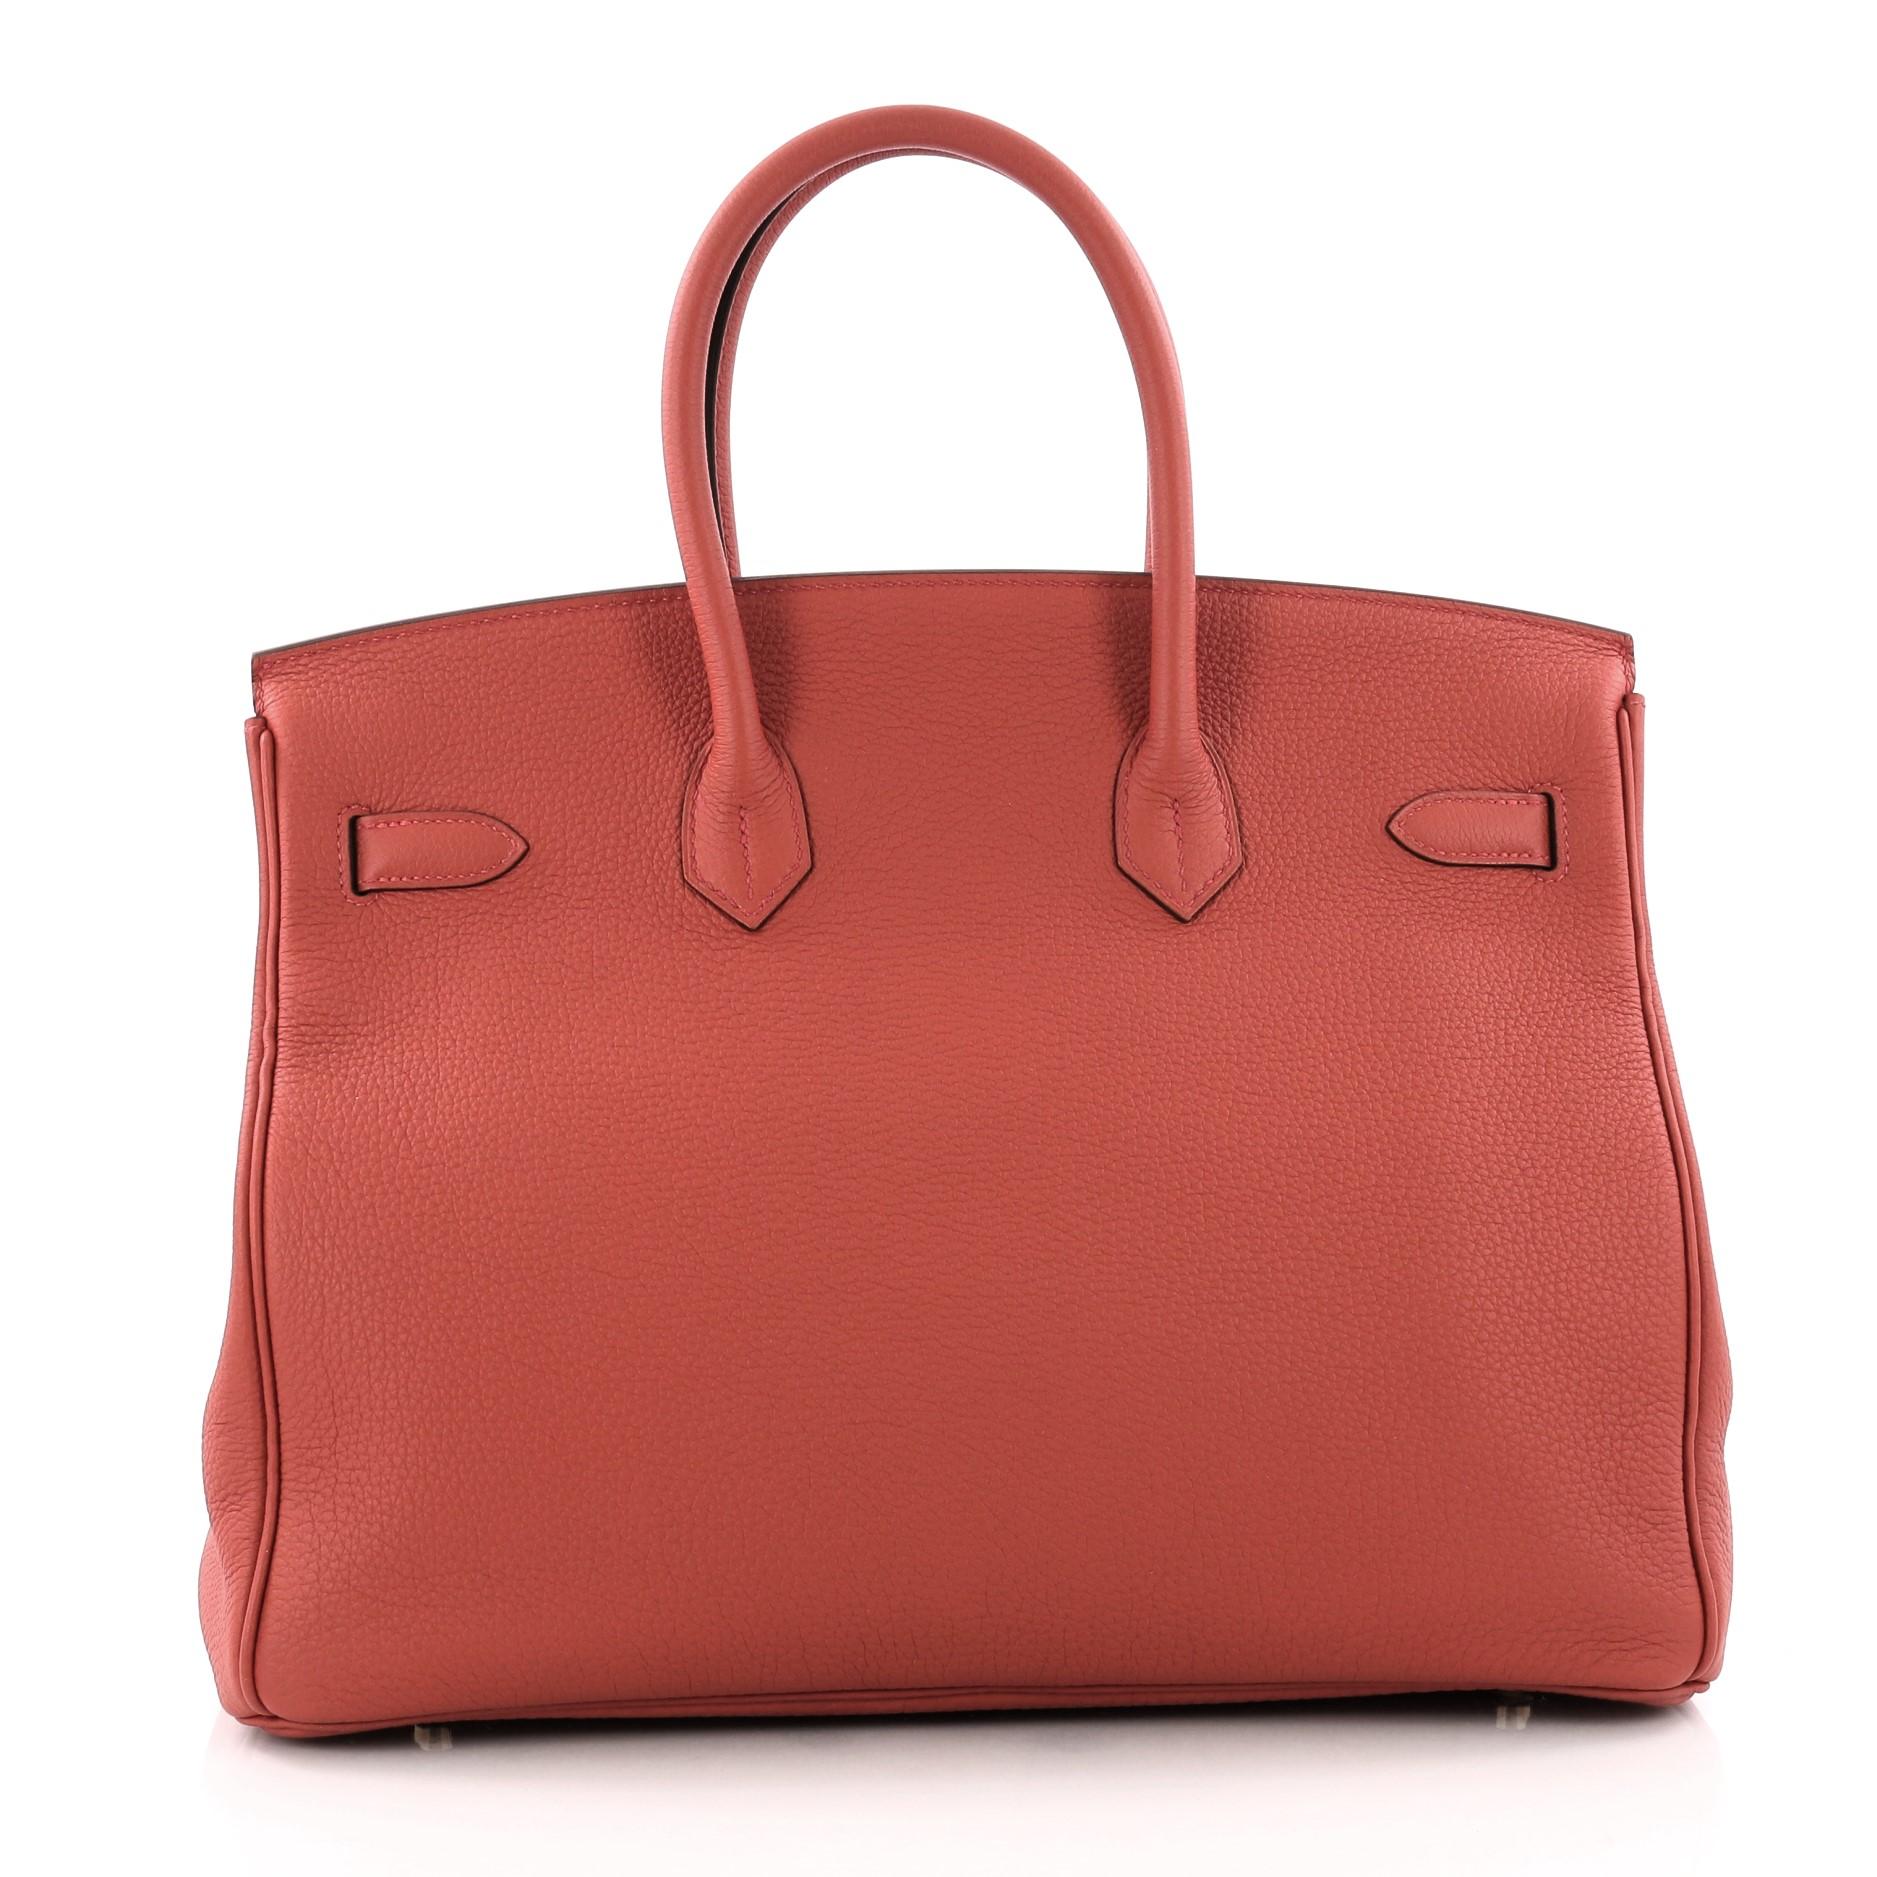 Women's or Men's  Hermes Birkin Handbag Rouge Tomate Togo with Gold Hardware 35